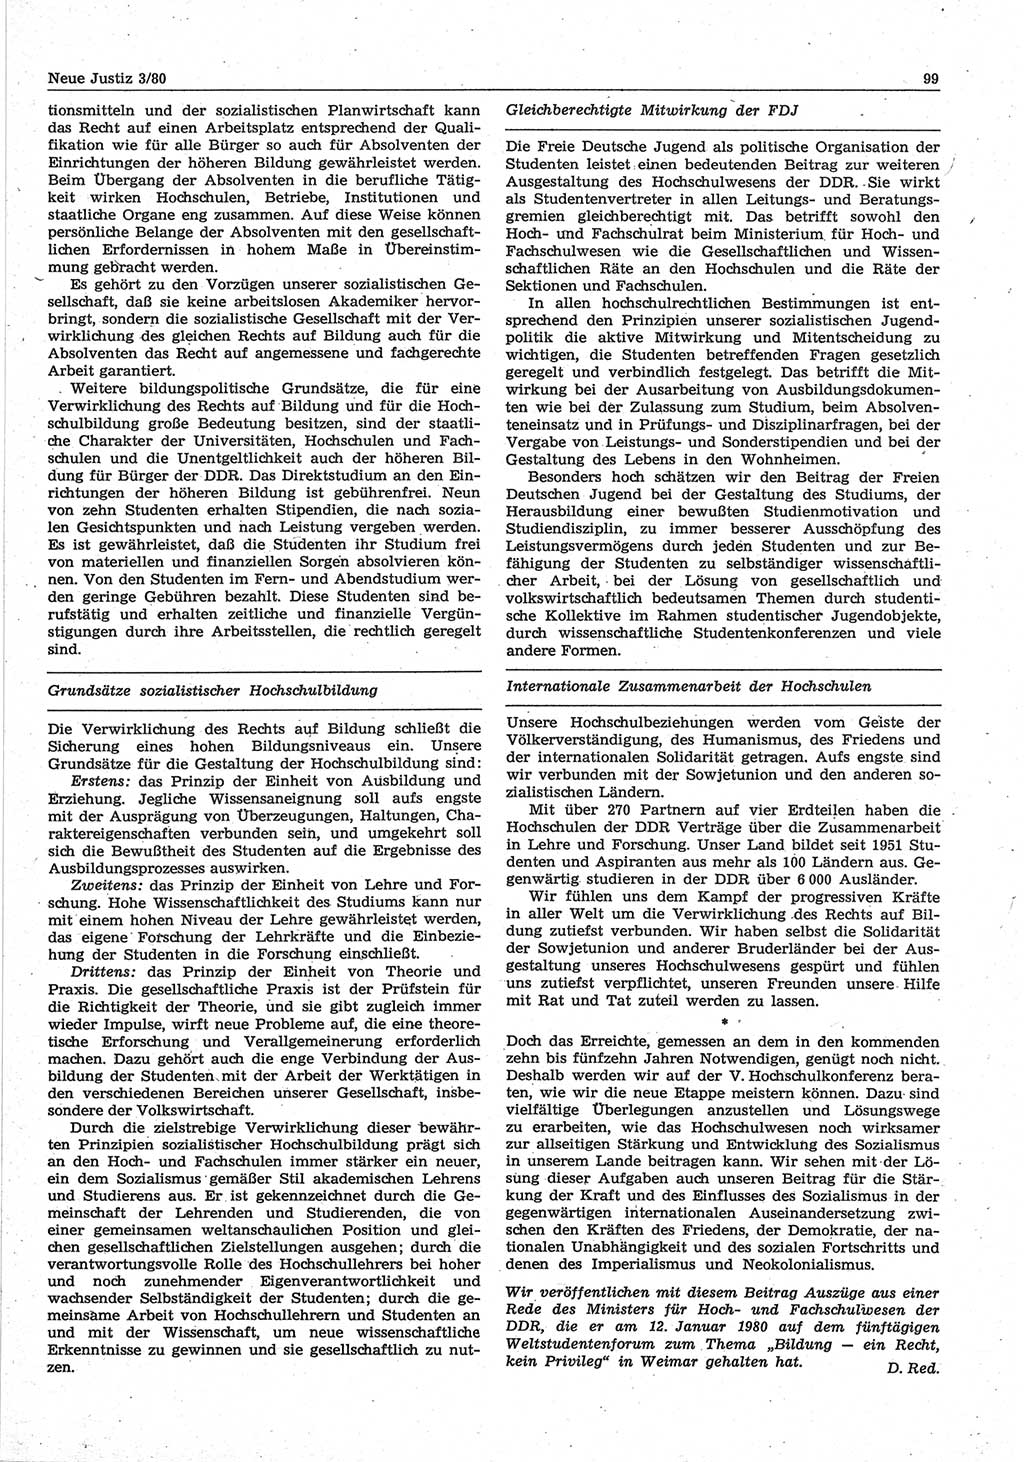 Neue Justiz (NJ), Zeitschrift für sozialistisches Recht und Gesetzlichkeit [Deutsche Demokratische Republik (DDR)], 34. Jahrgang 1980, Seite 99 (NJ DDR 1980, S. 99)